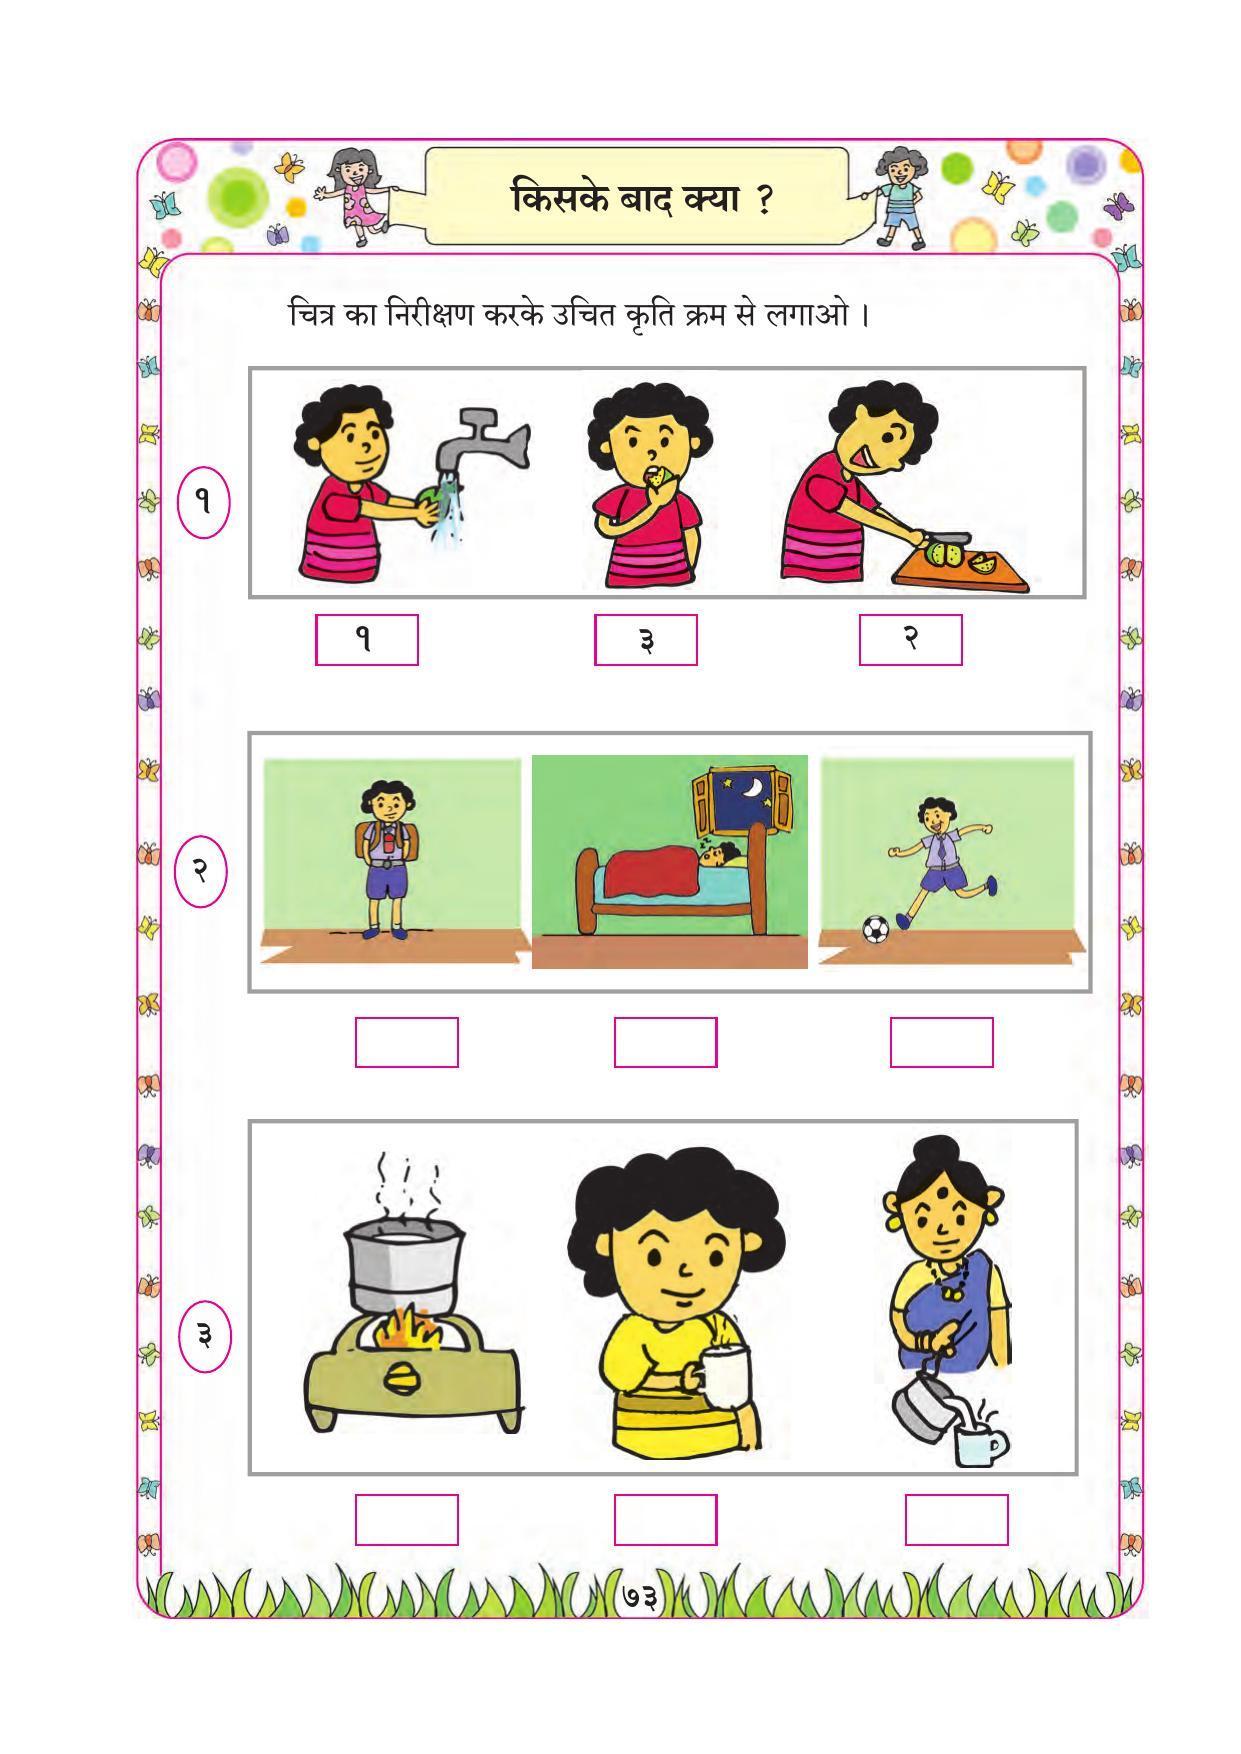 Maharashtra Board Class 1 Maths (Hindi Medium) Textbook - Page 83